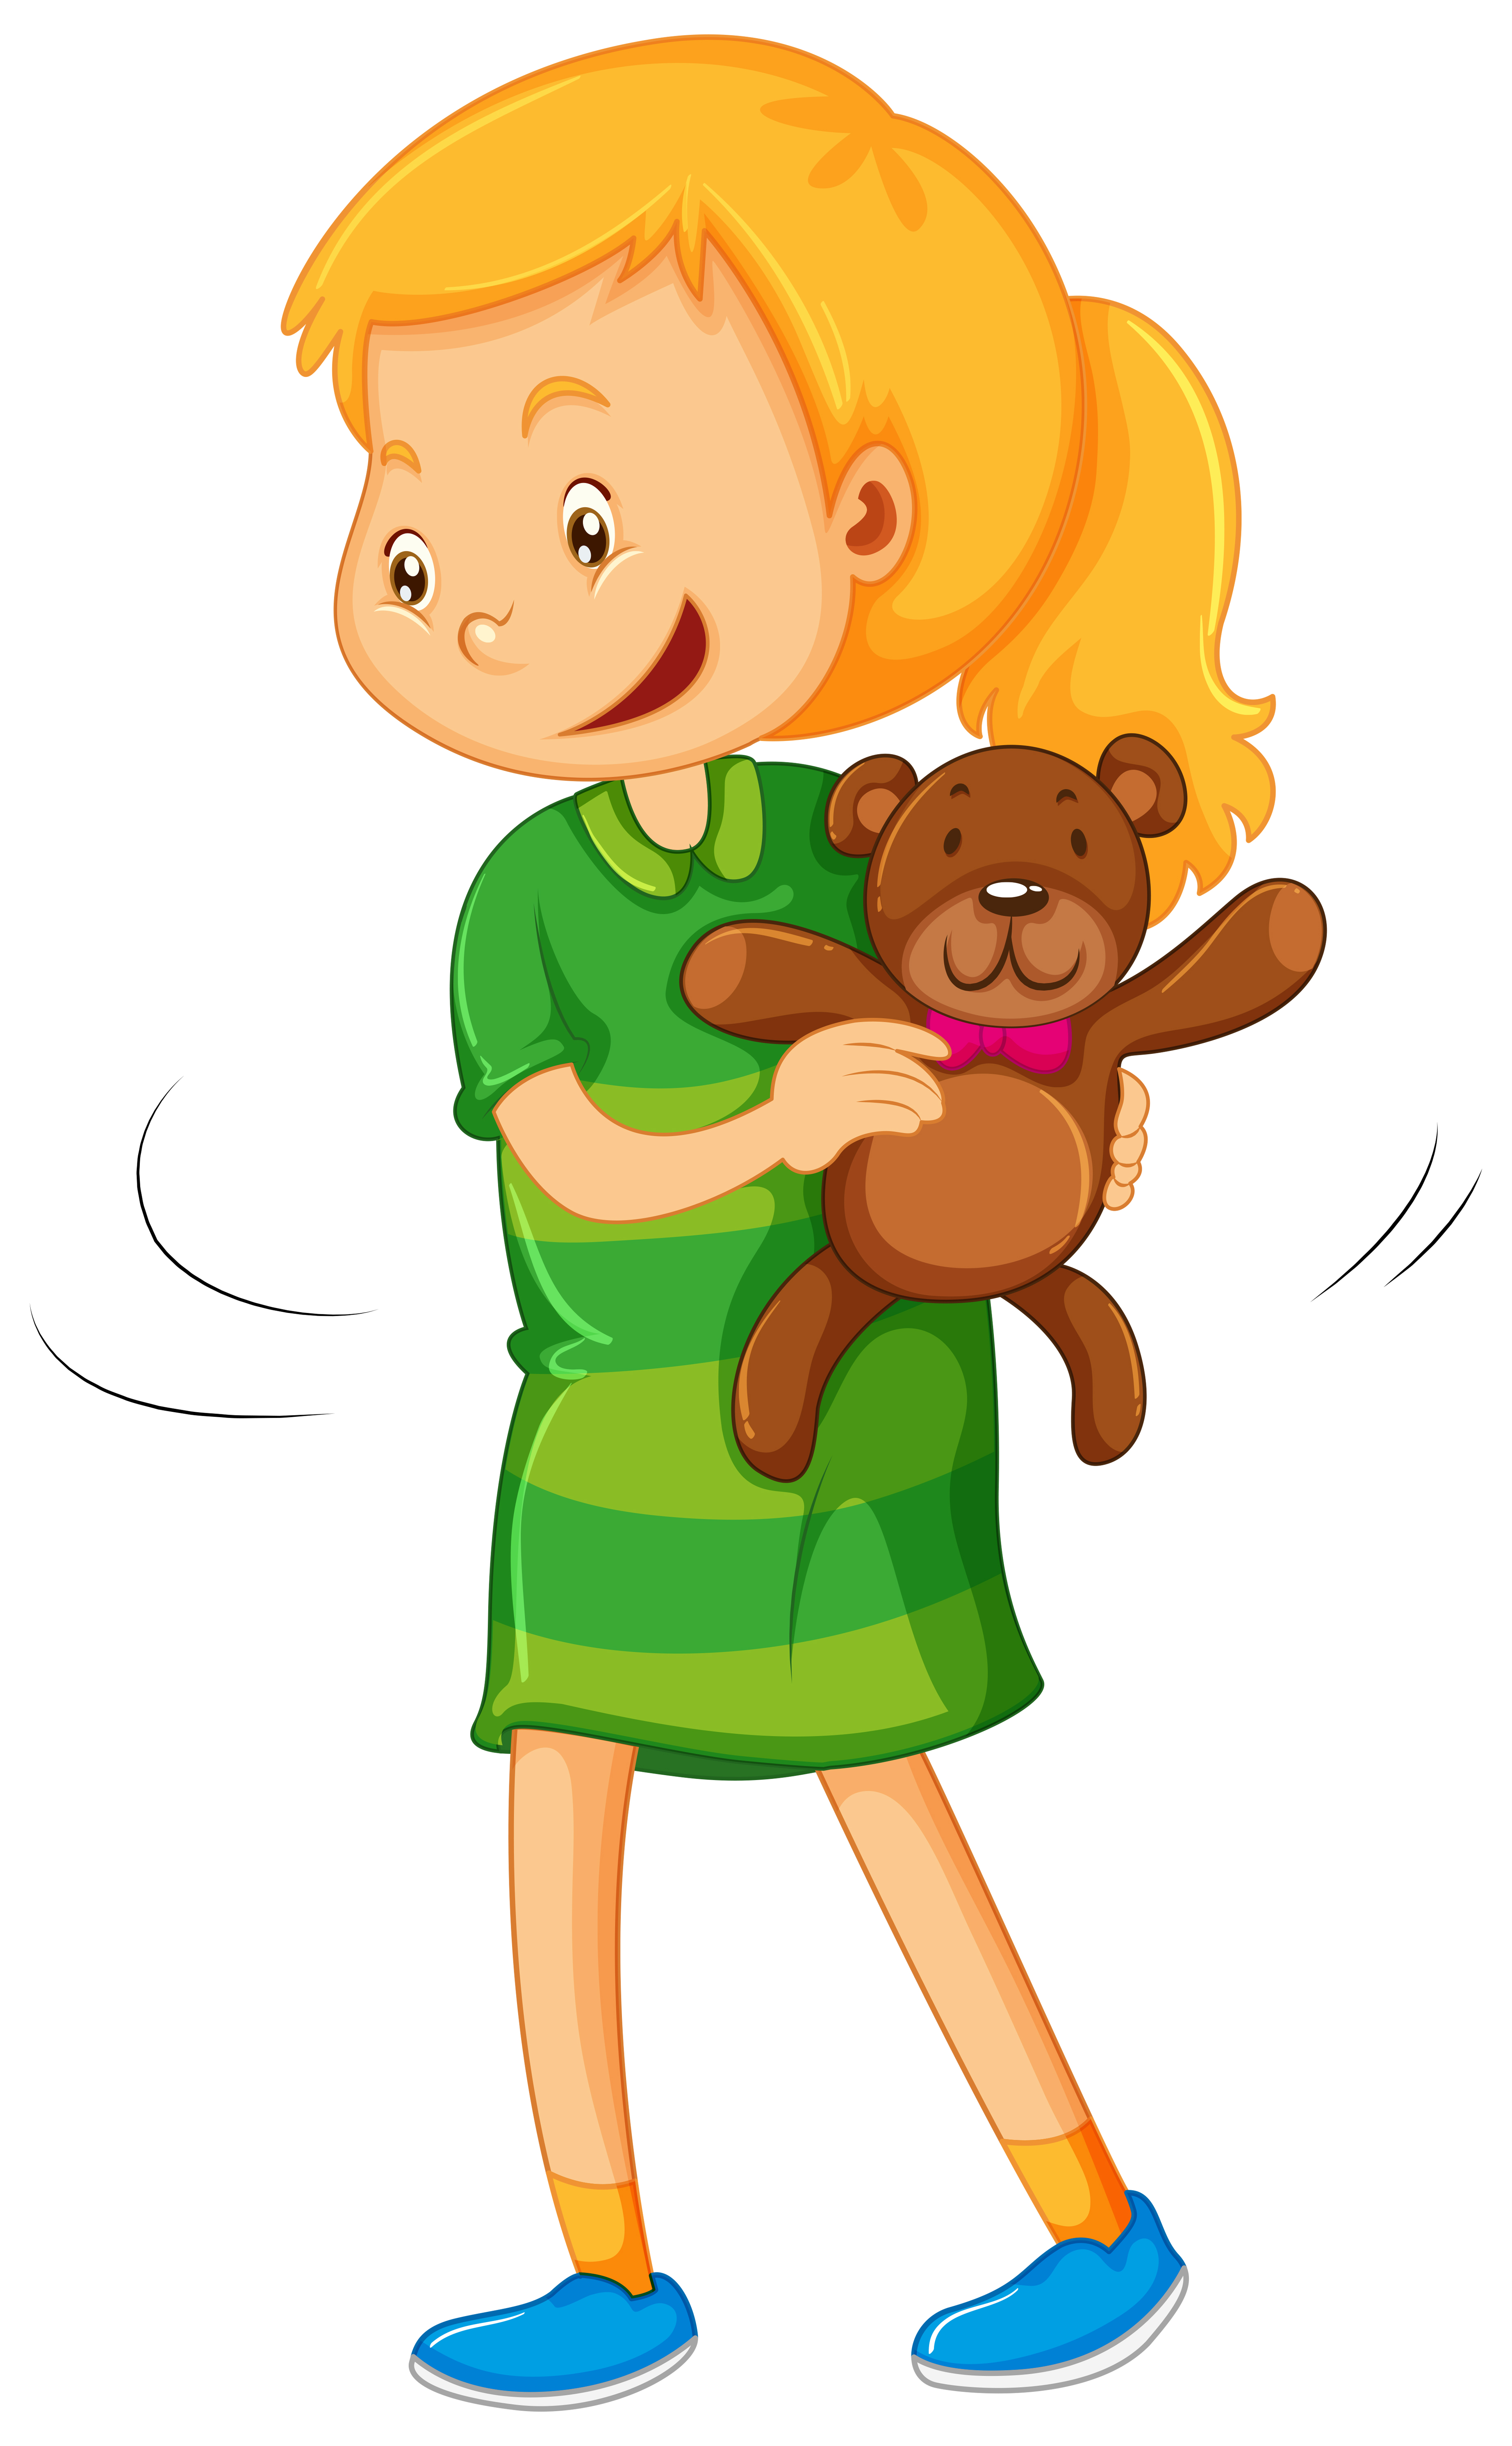 girl holding a teddy bear